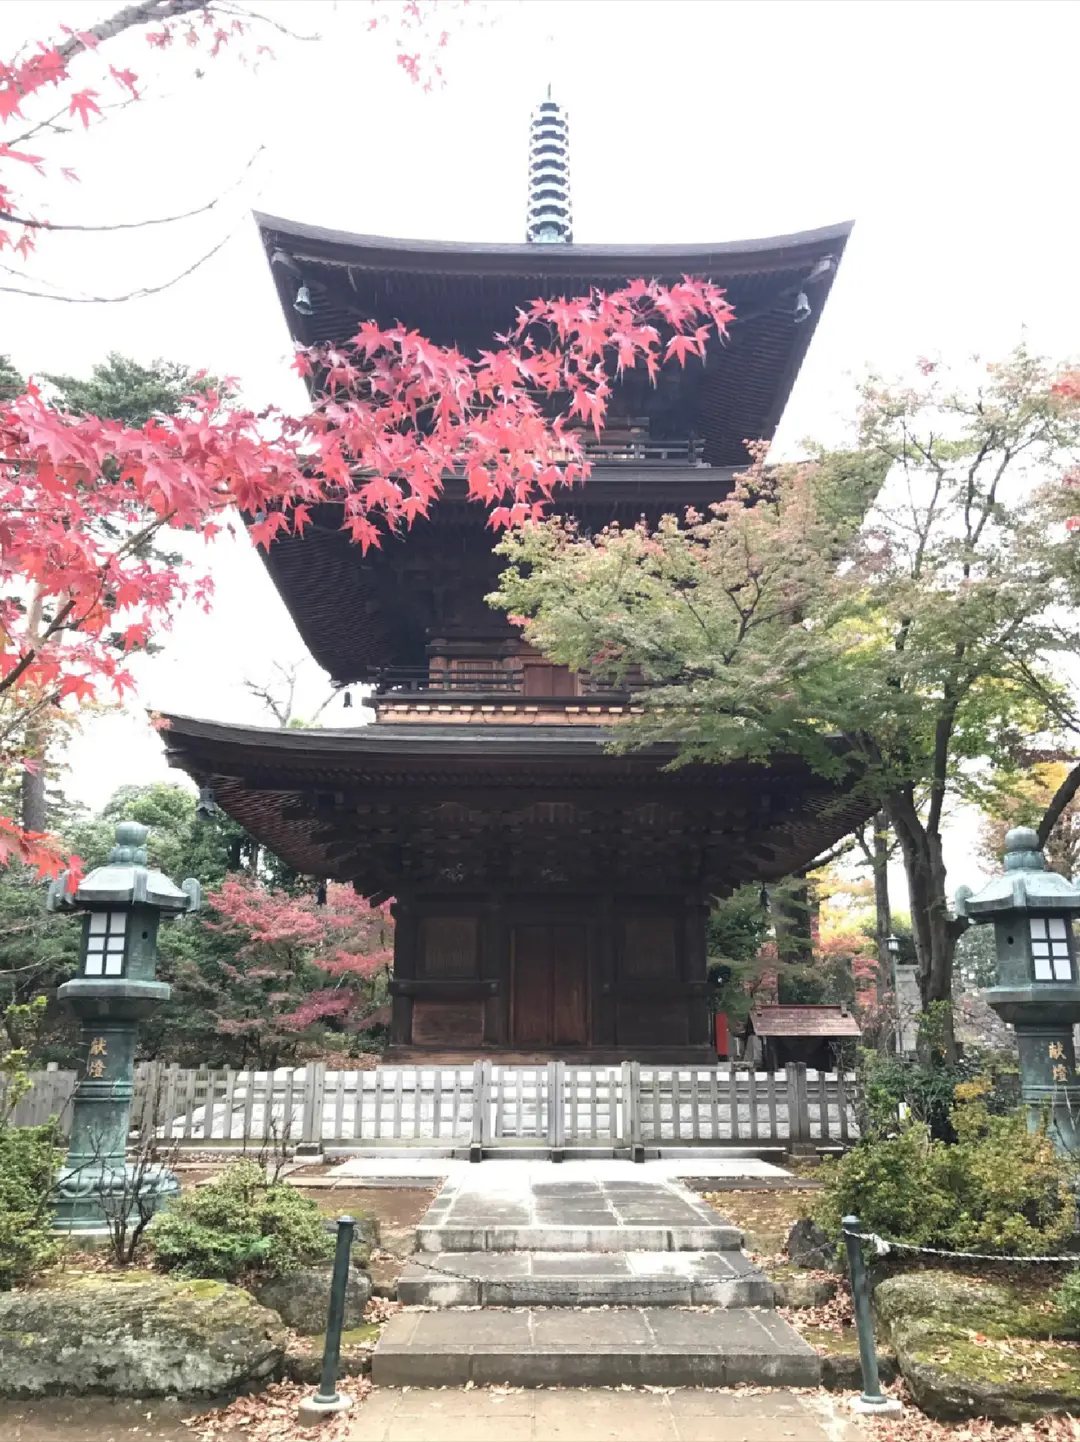 招き猫発祥の地!秋のお天気の日には世田谷区豪徳寺にお散歩に行こう♪の画像